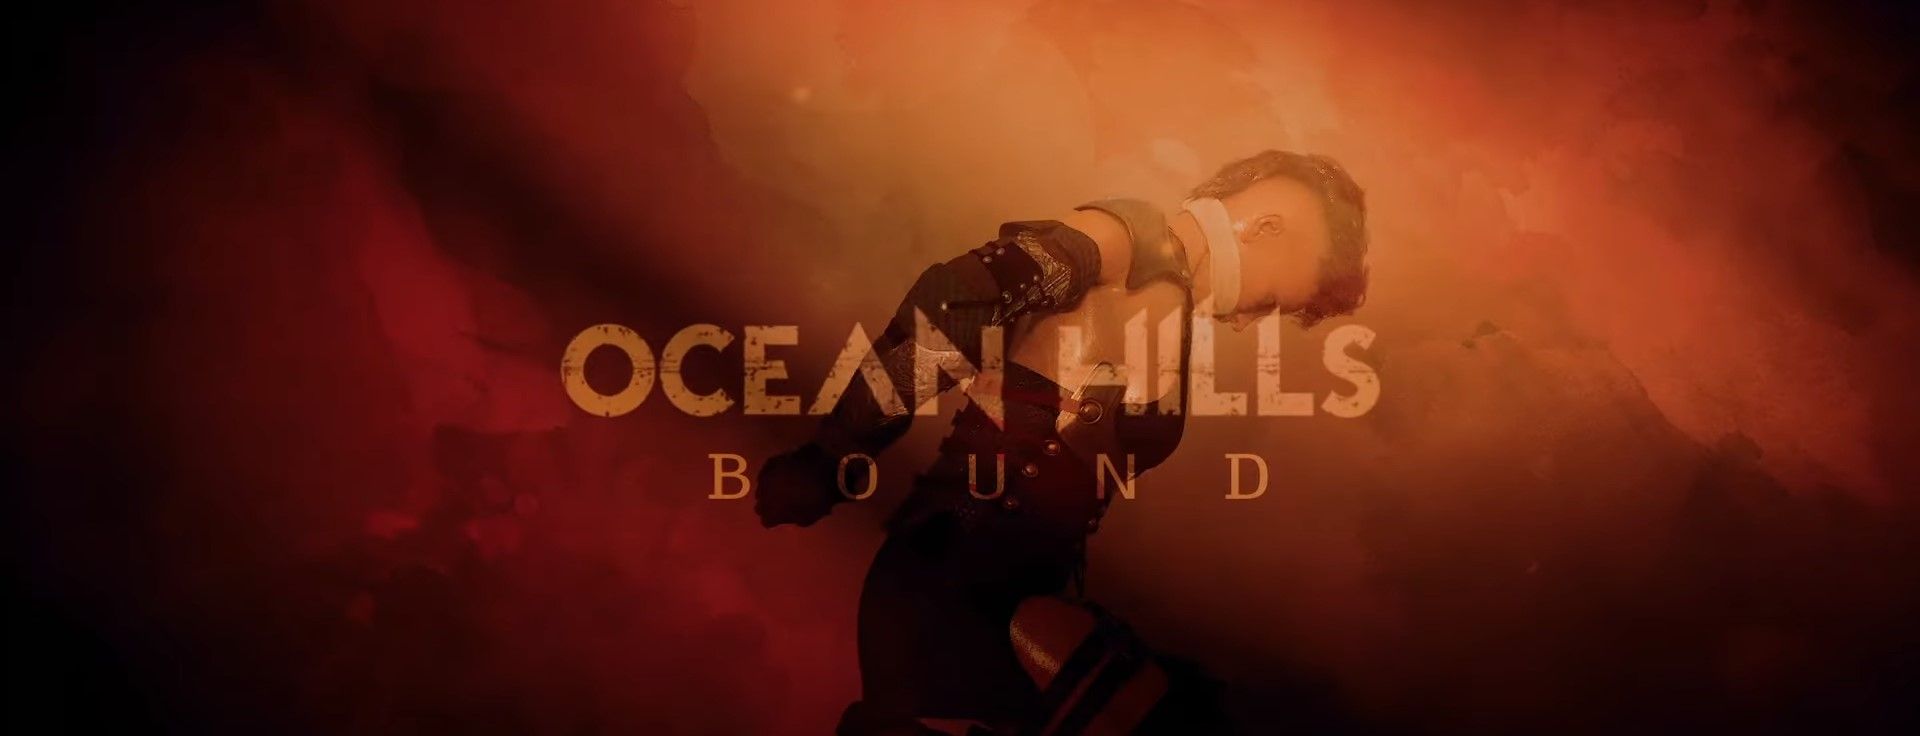 Ocean Hills - Bound (Official)